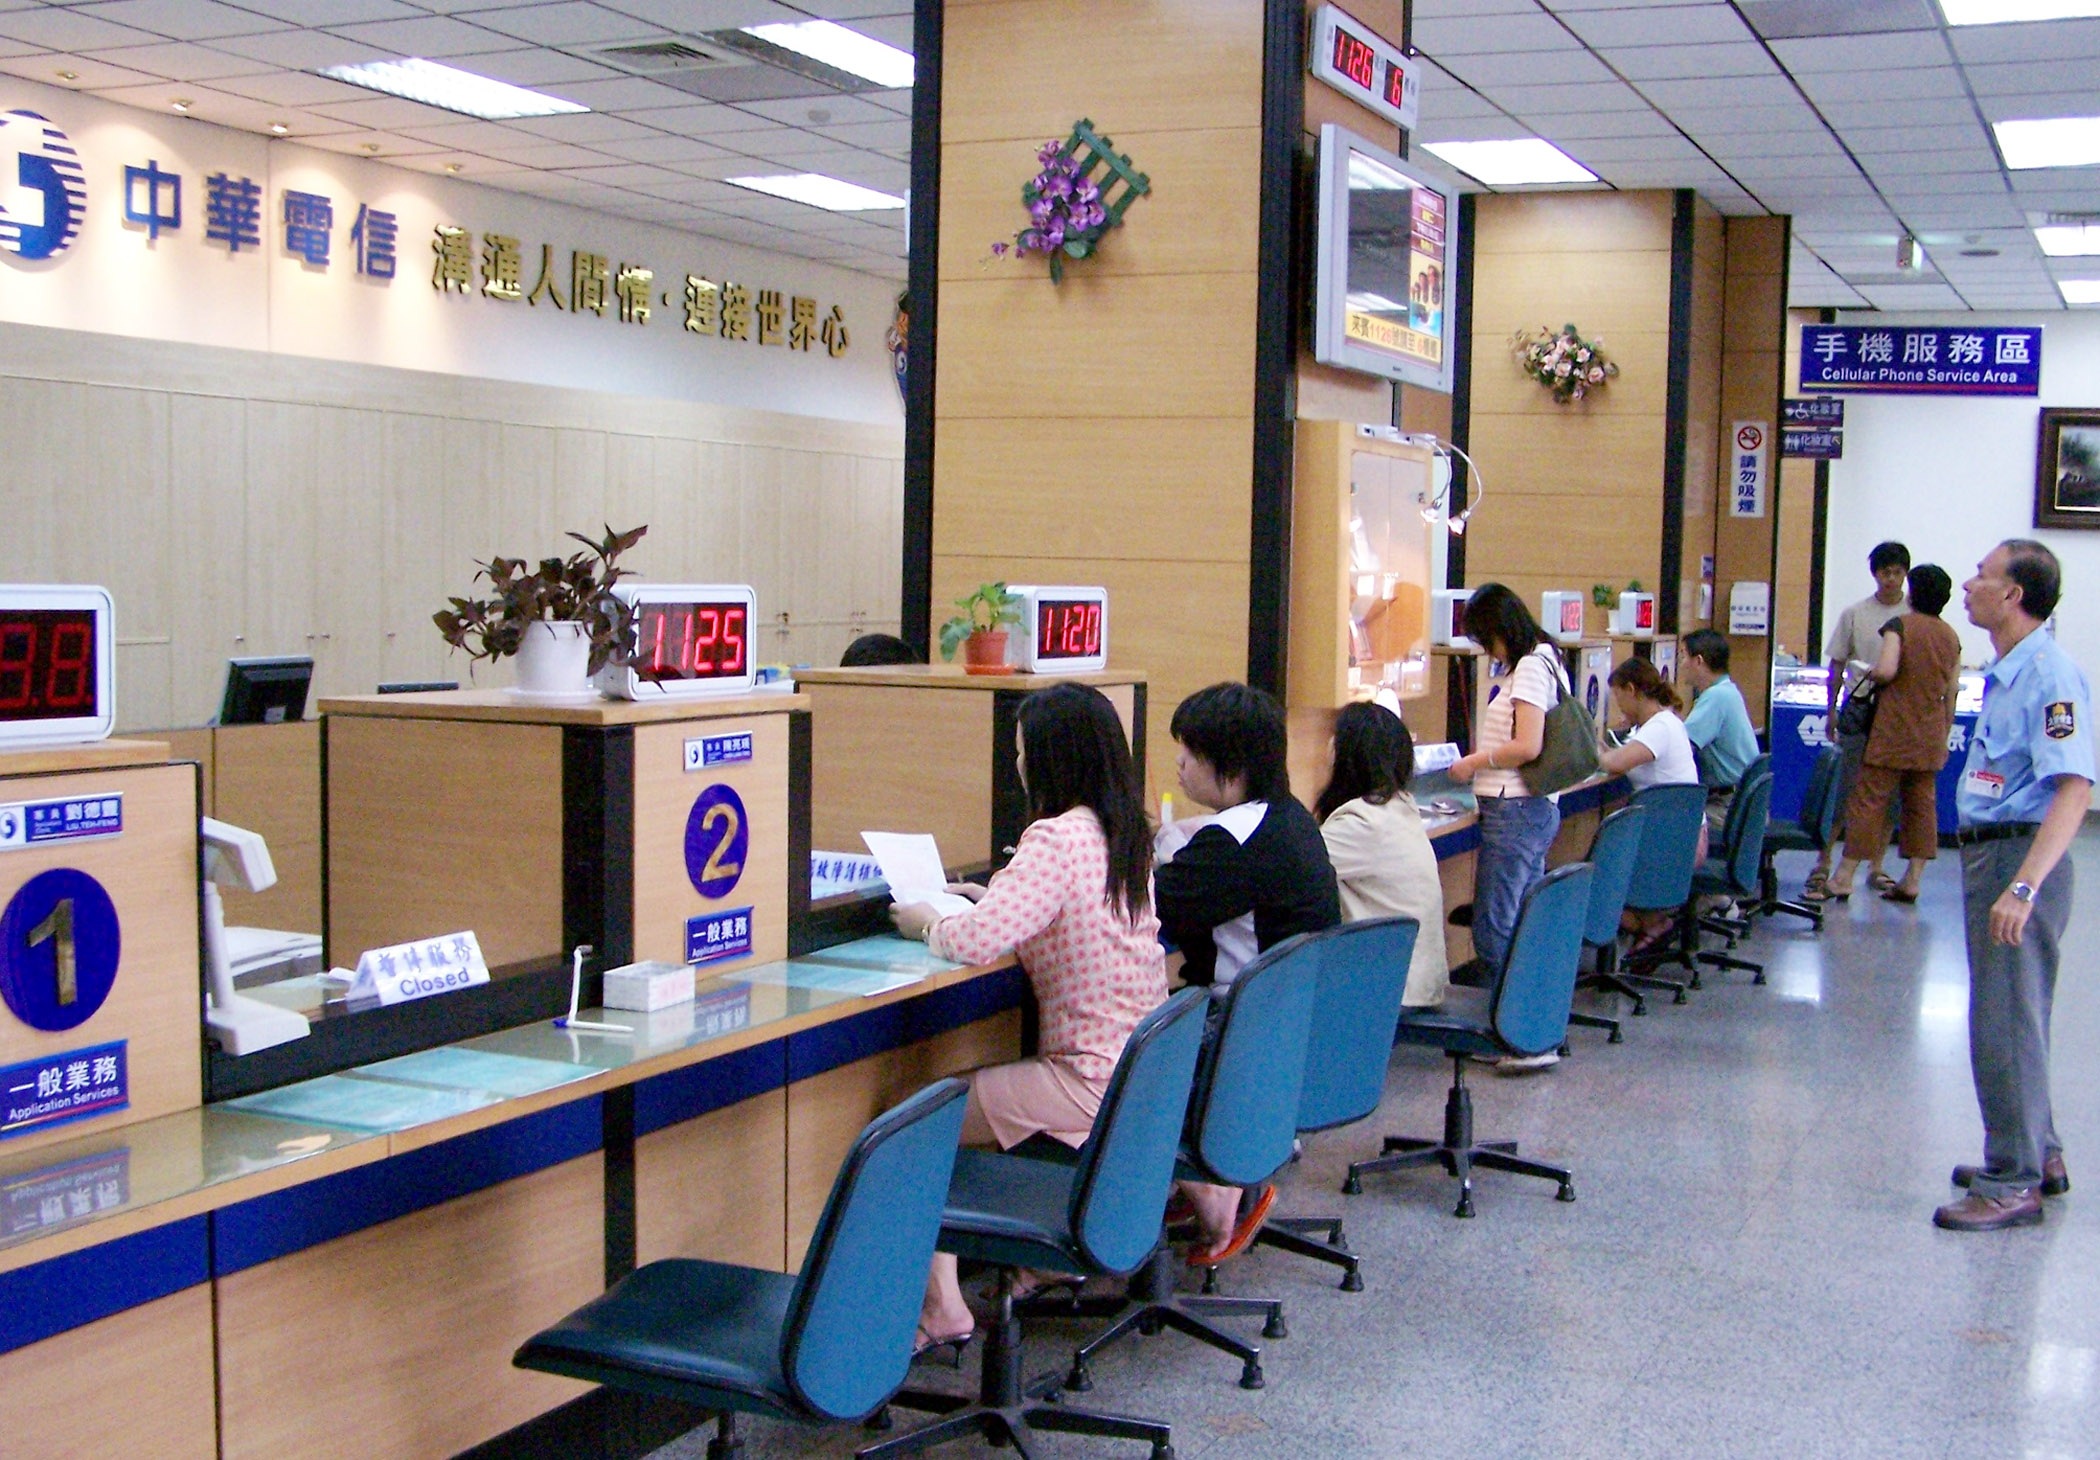 中華電信之子公司徵客服 年薪上看60萬